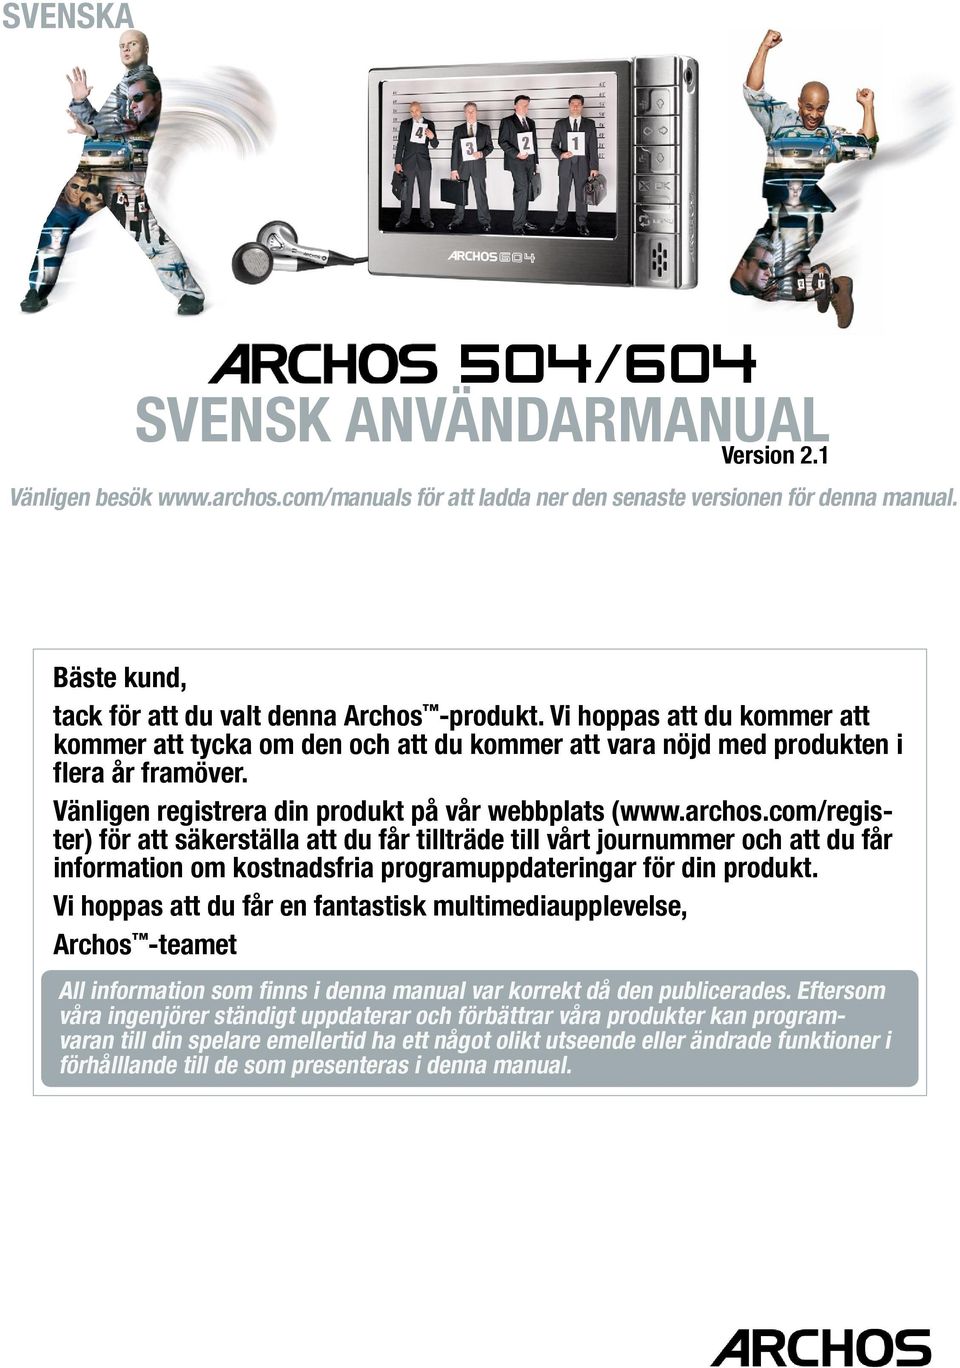 Vänligen registrera din produkt på vår webbplats (www.archos.